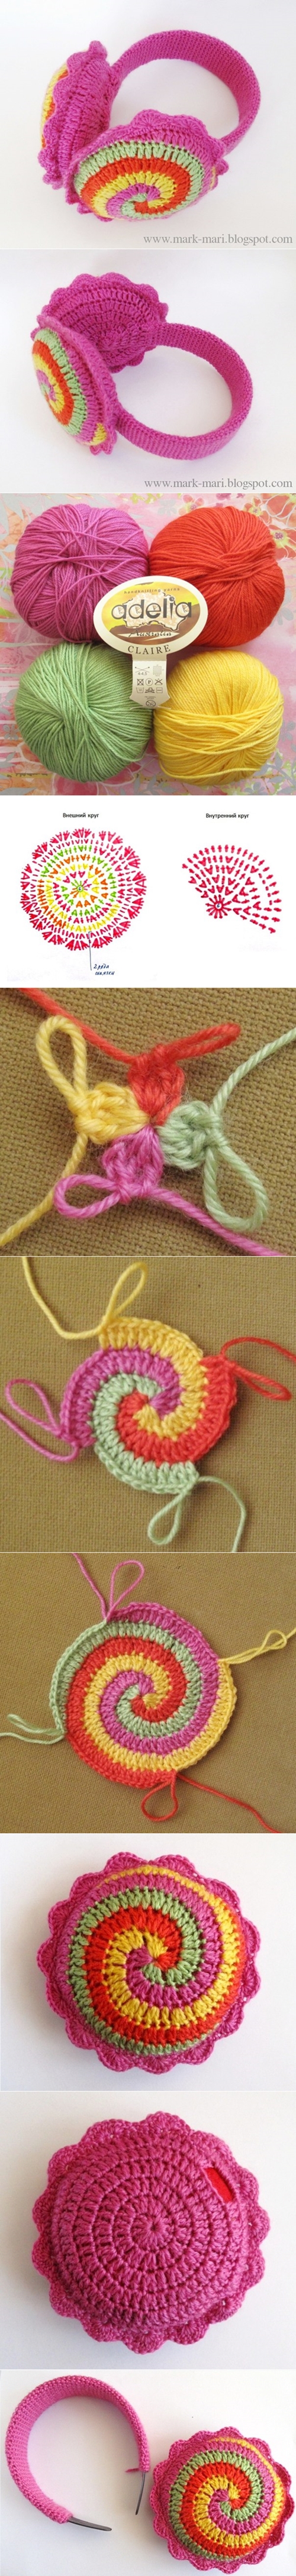 crochet swirl flower pattern TUTORIAL